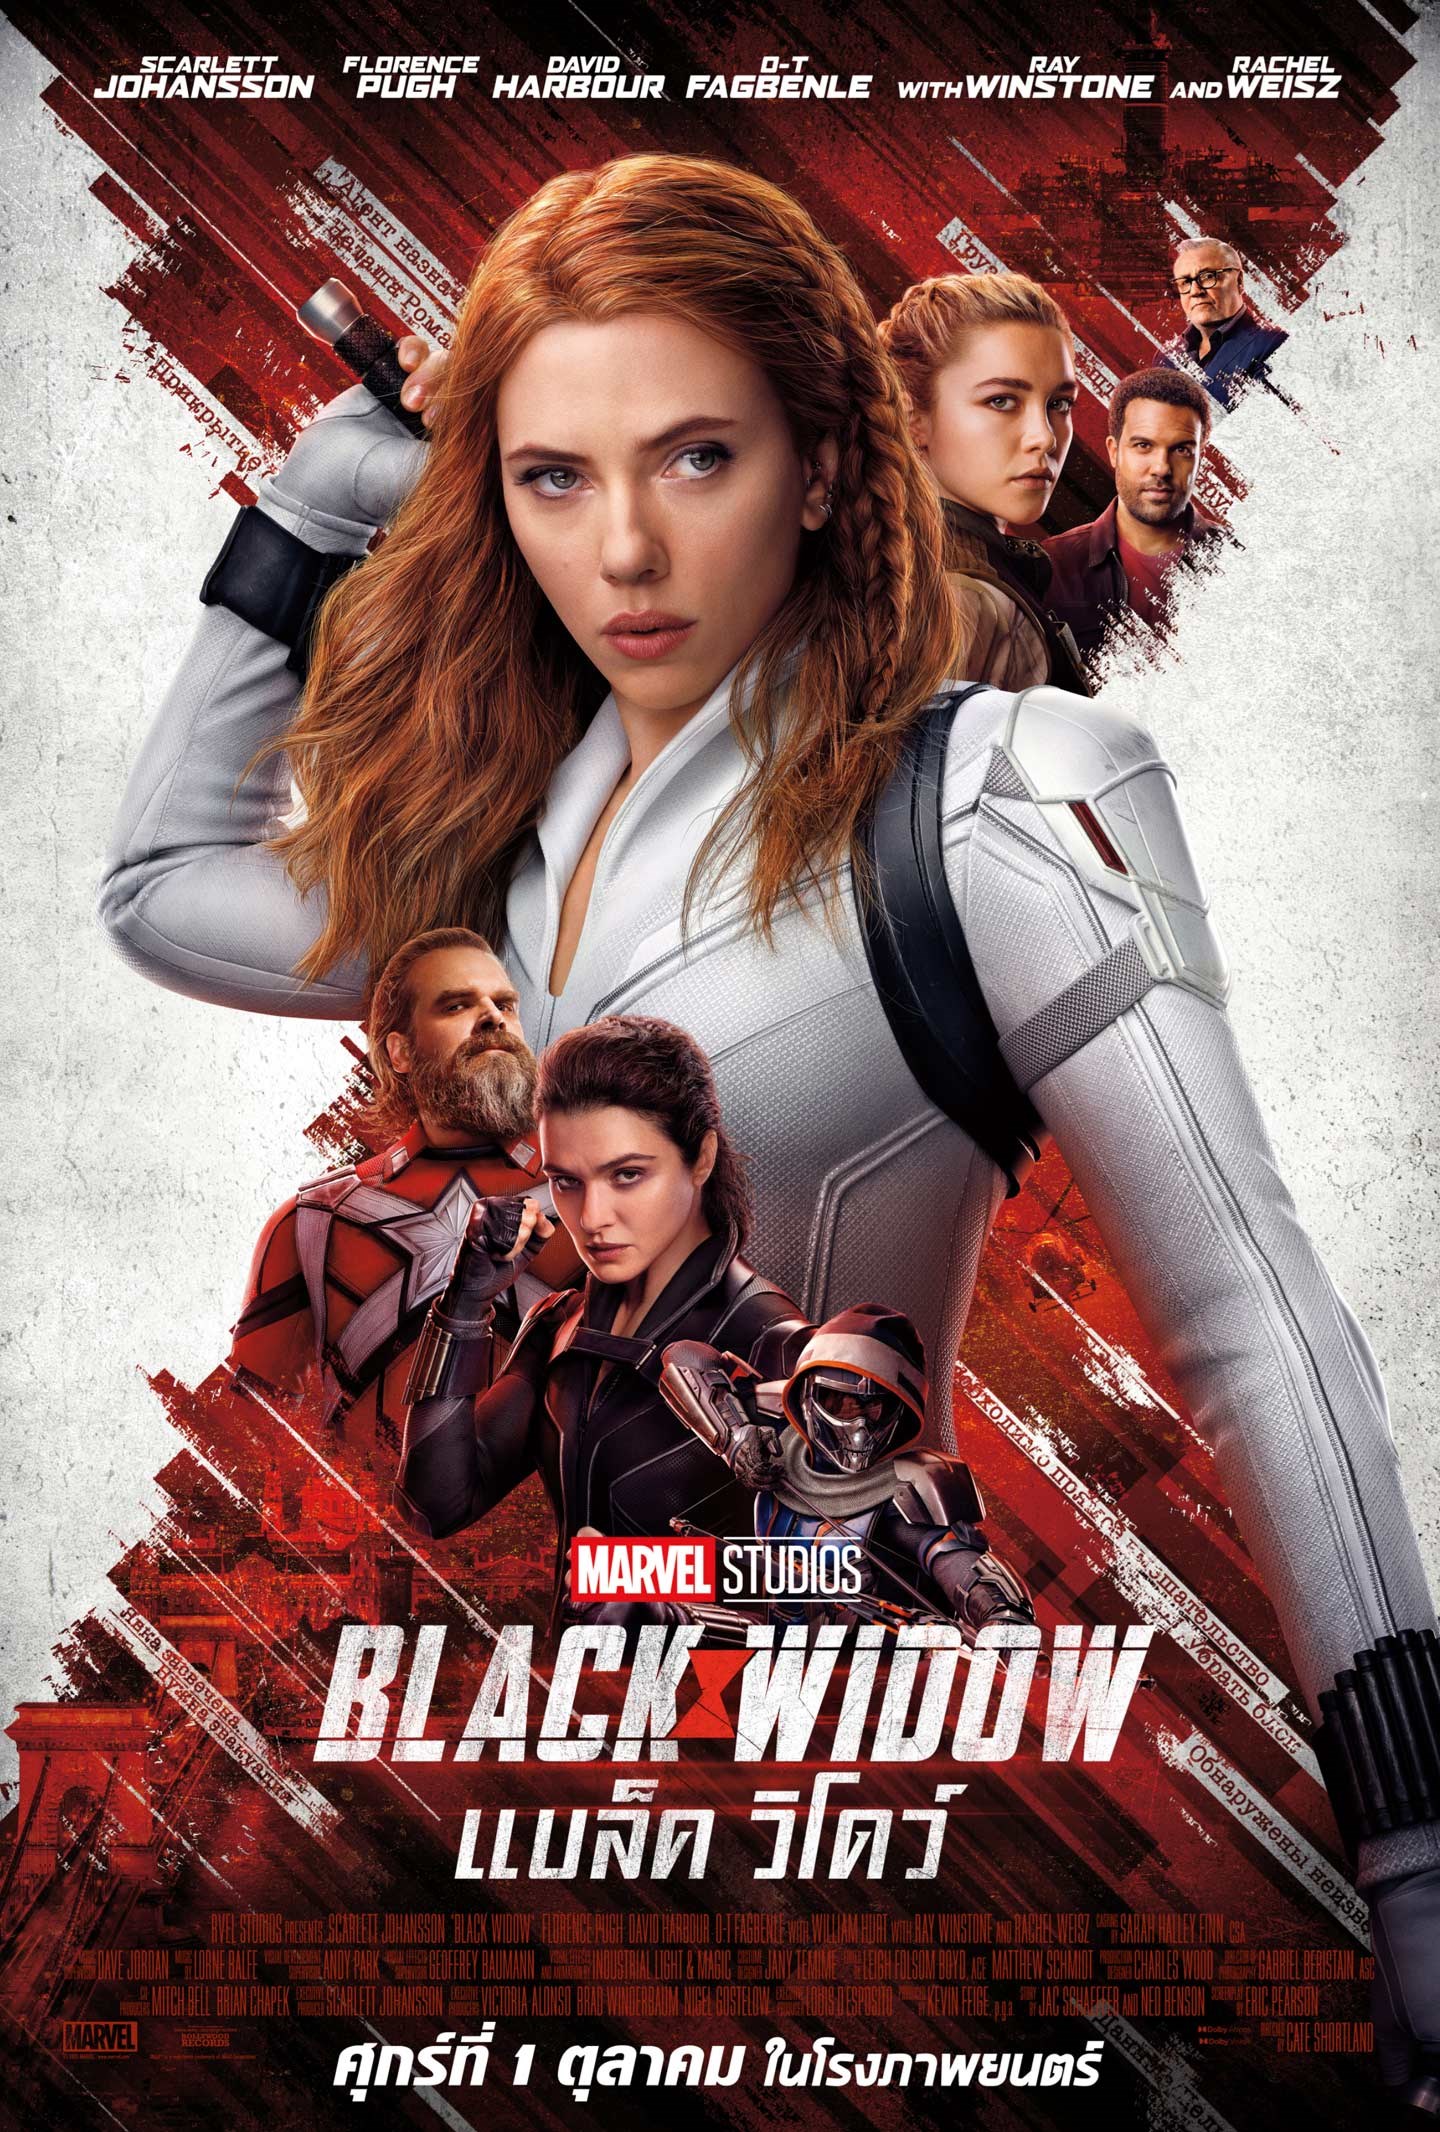 ดูหนังออนไลน์ ดูหนังออนไลน์ไม่มีสะดุด Black Widow 2021 แบล็ค วิโดว์ 037moviefree